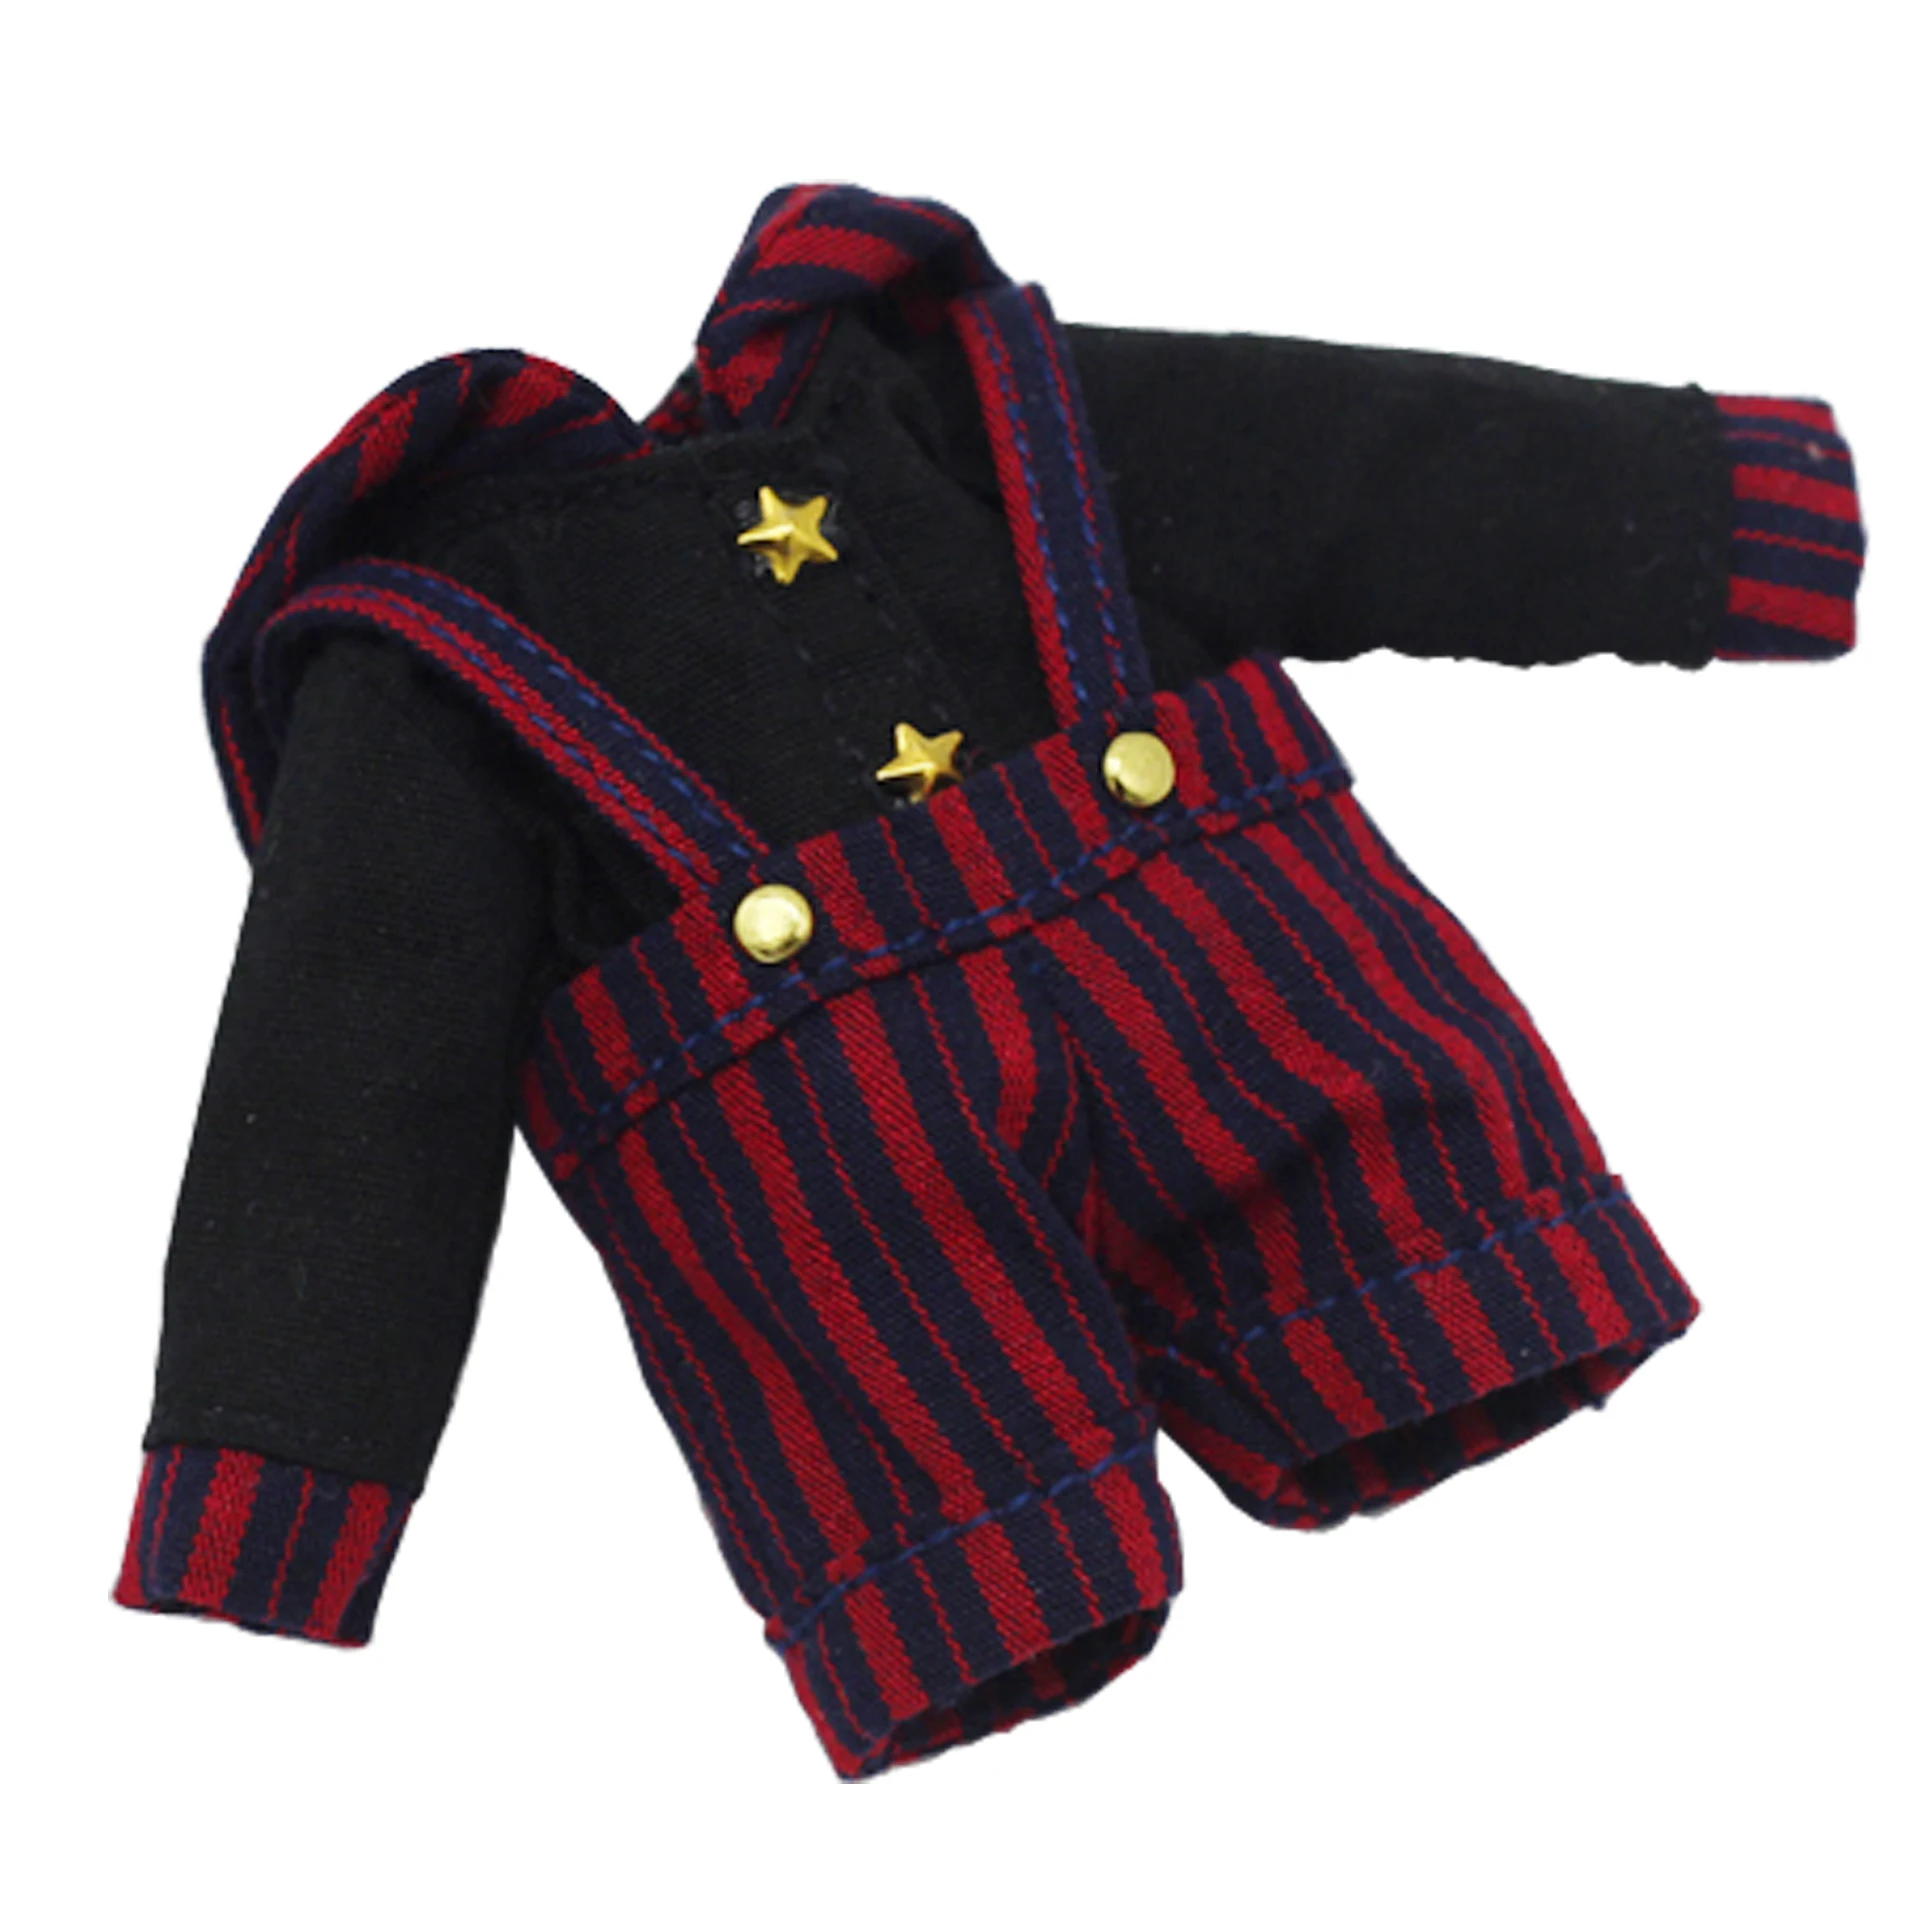 1 комплект Obitsu 11 кукольная одежда Студенческая форма костюм для OB11, 1/12 BJD Кукла Одежда Аксессуары - Цвет: Красный